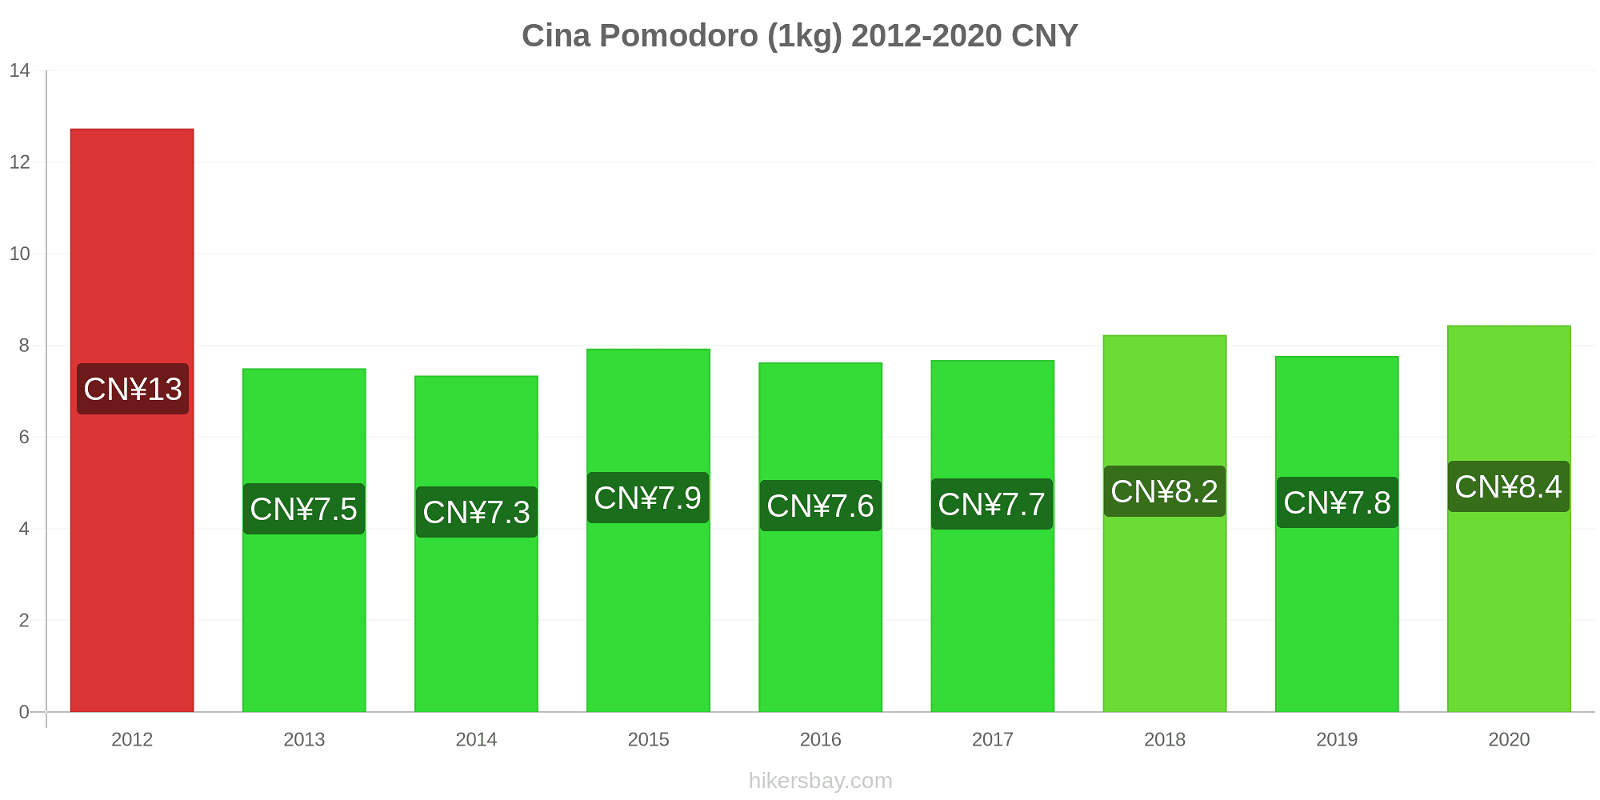 Cina variazioni di prezzo Pomodoro (1kg) hikersbay.com